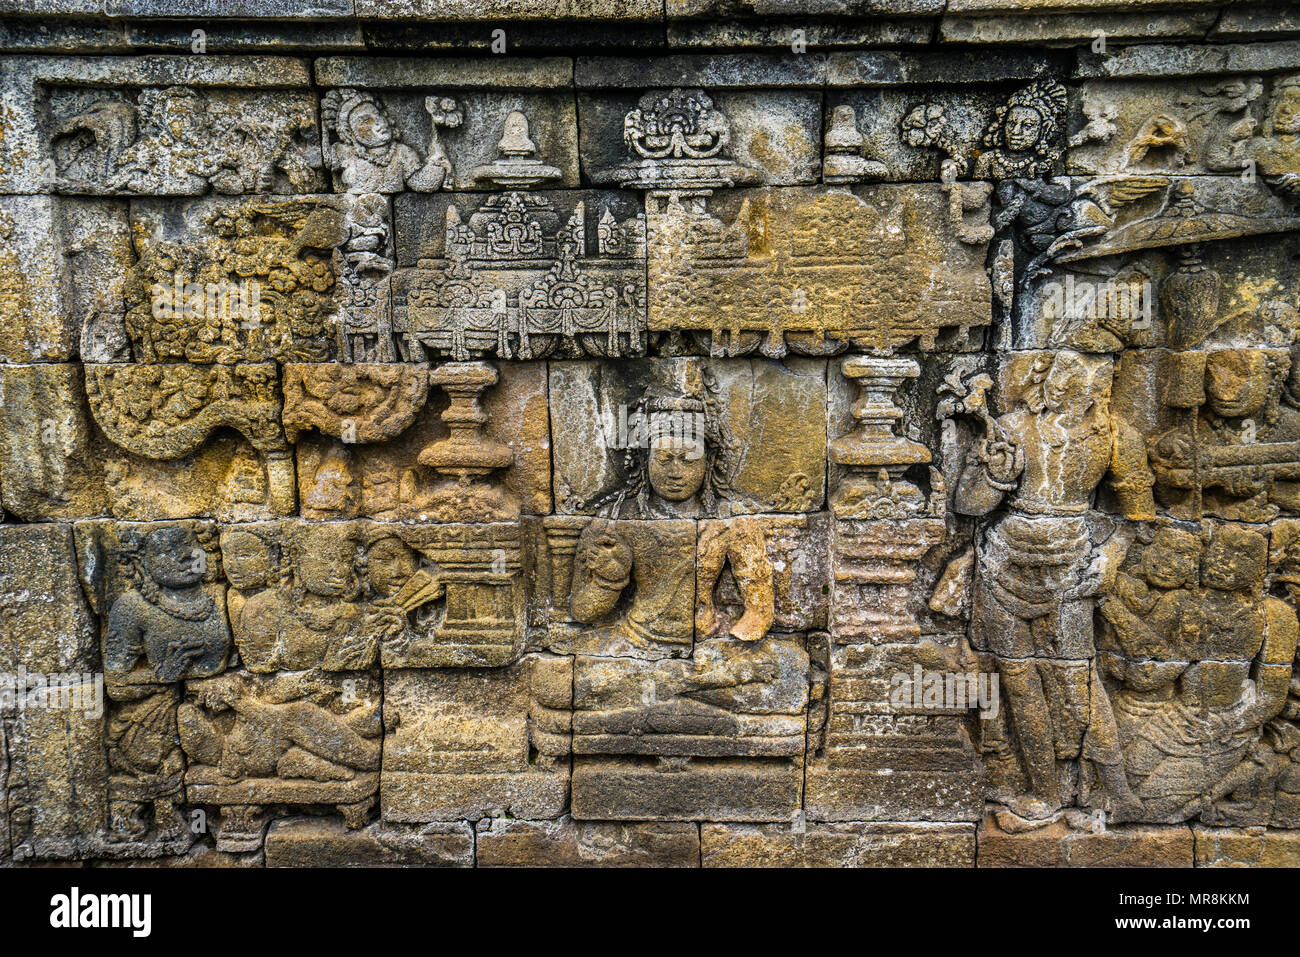 An der vierten Balustrade des 9. Jahrhunderts Borobudur buddhistischen Tempel, die rund 2672 bilden eine der umfassendsten Buddhis Stockfoto